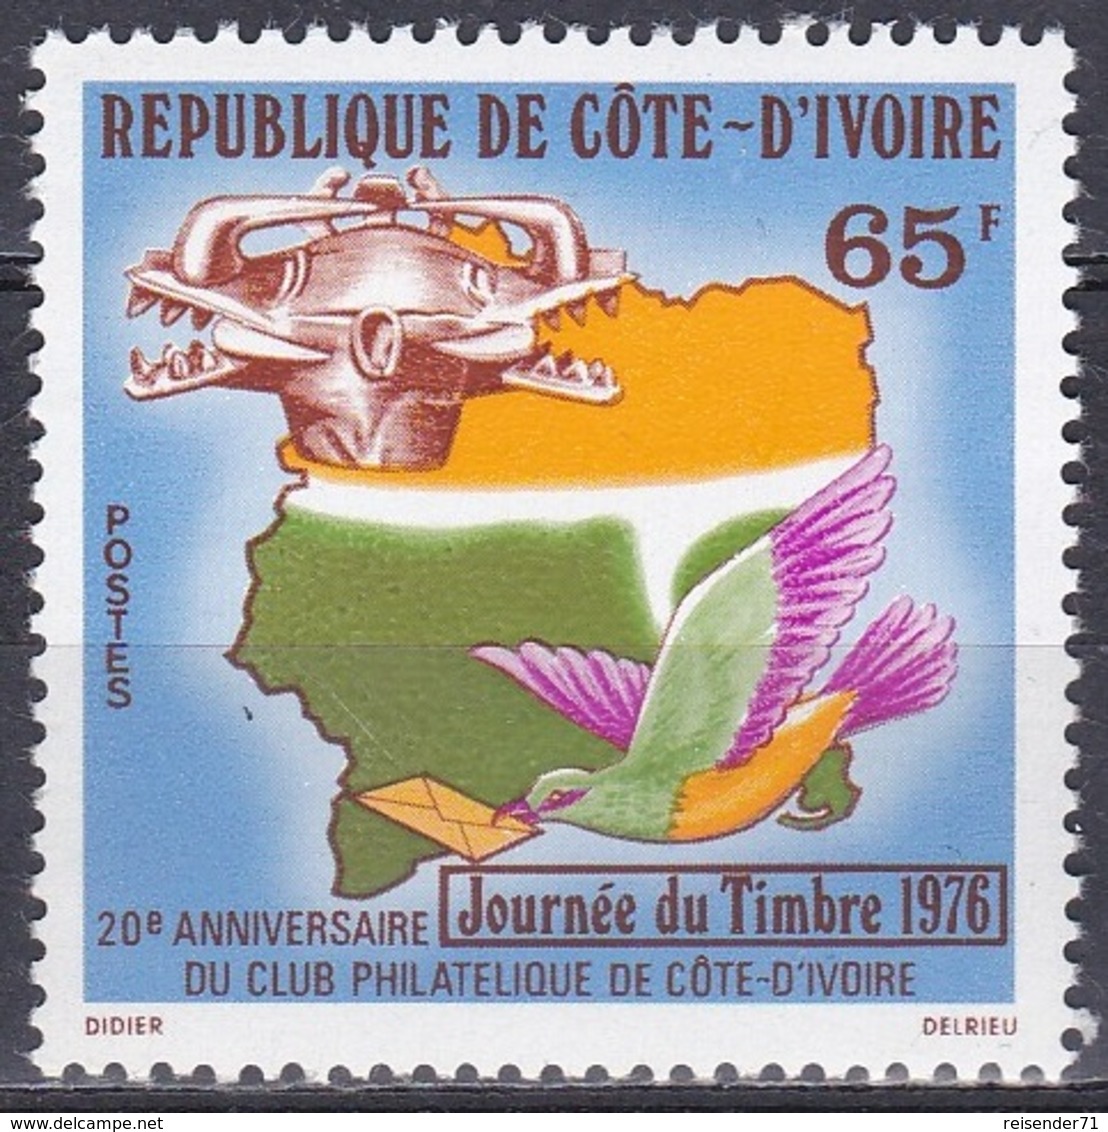 Elfenbeinküste Ivory Coast Cote D'Ivoire 1976 Philatelie Philately Brieftauben Tauben Doves Masken Masks, Mi. 488 ** - Côte D'Ivoire (1960-...)